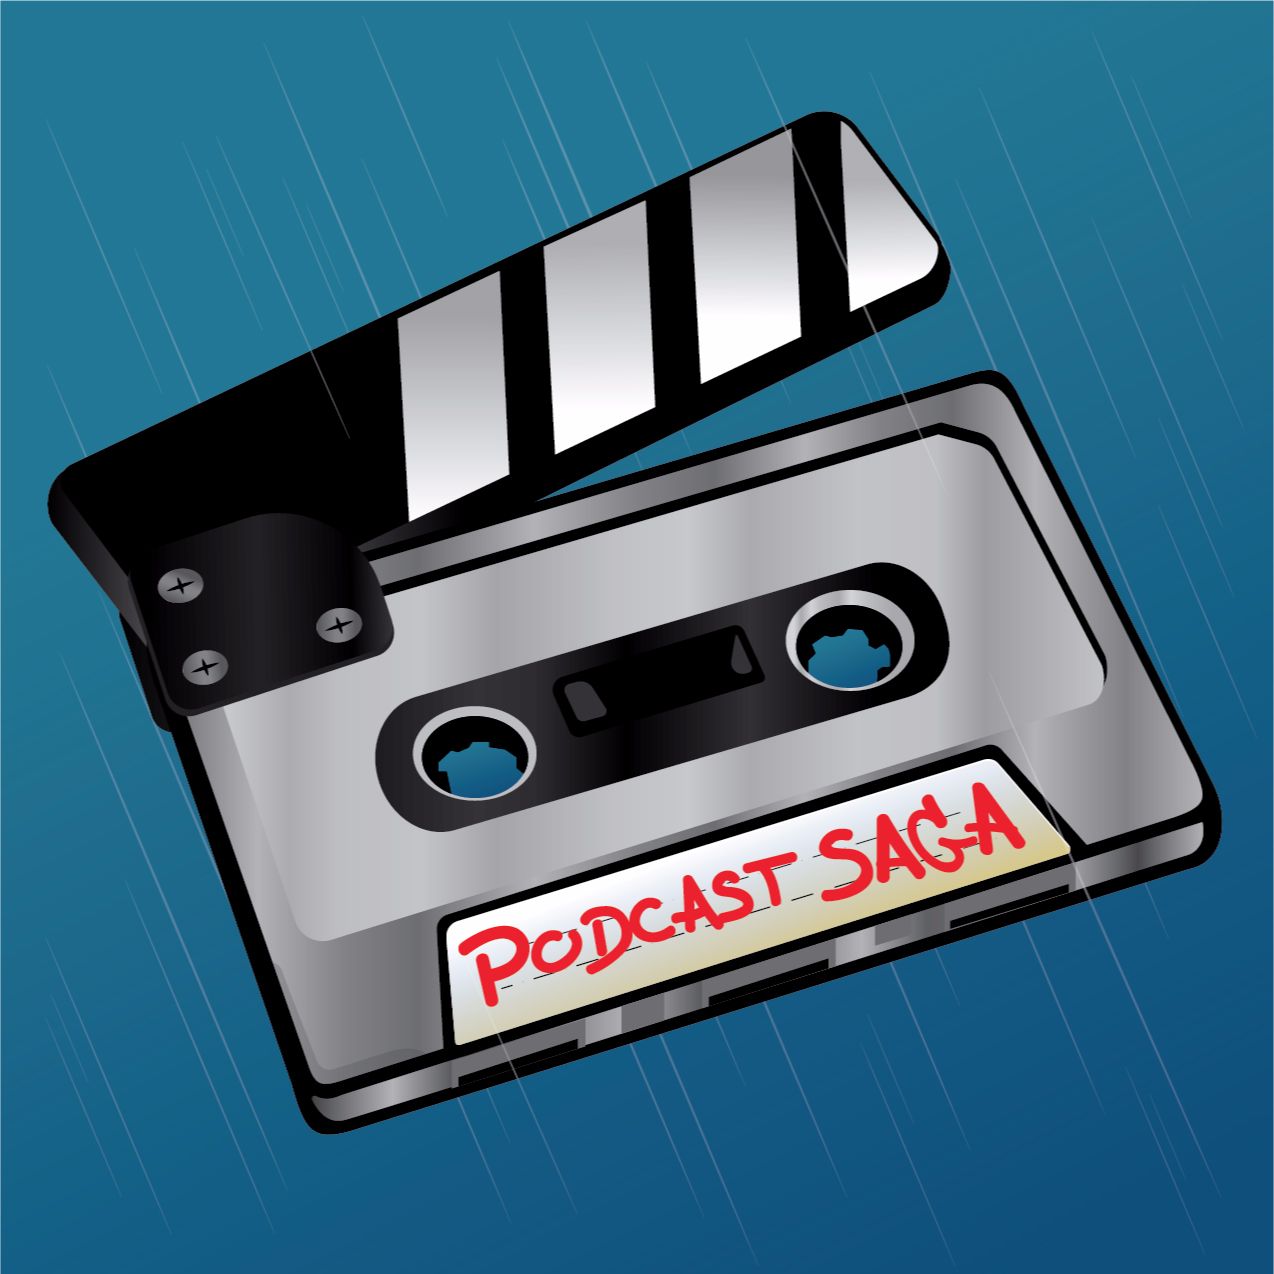 Podcast Saga